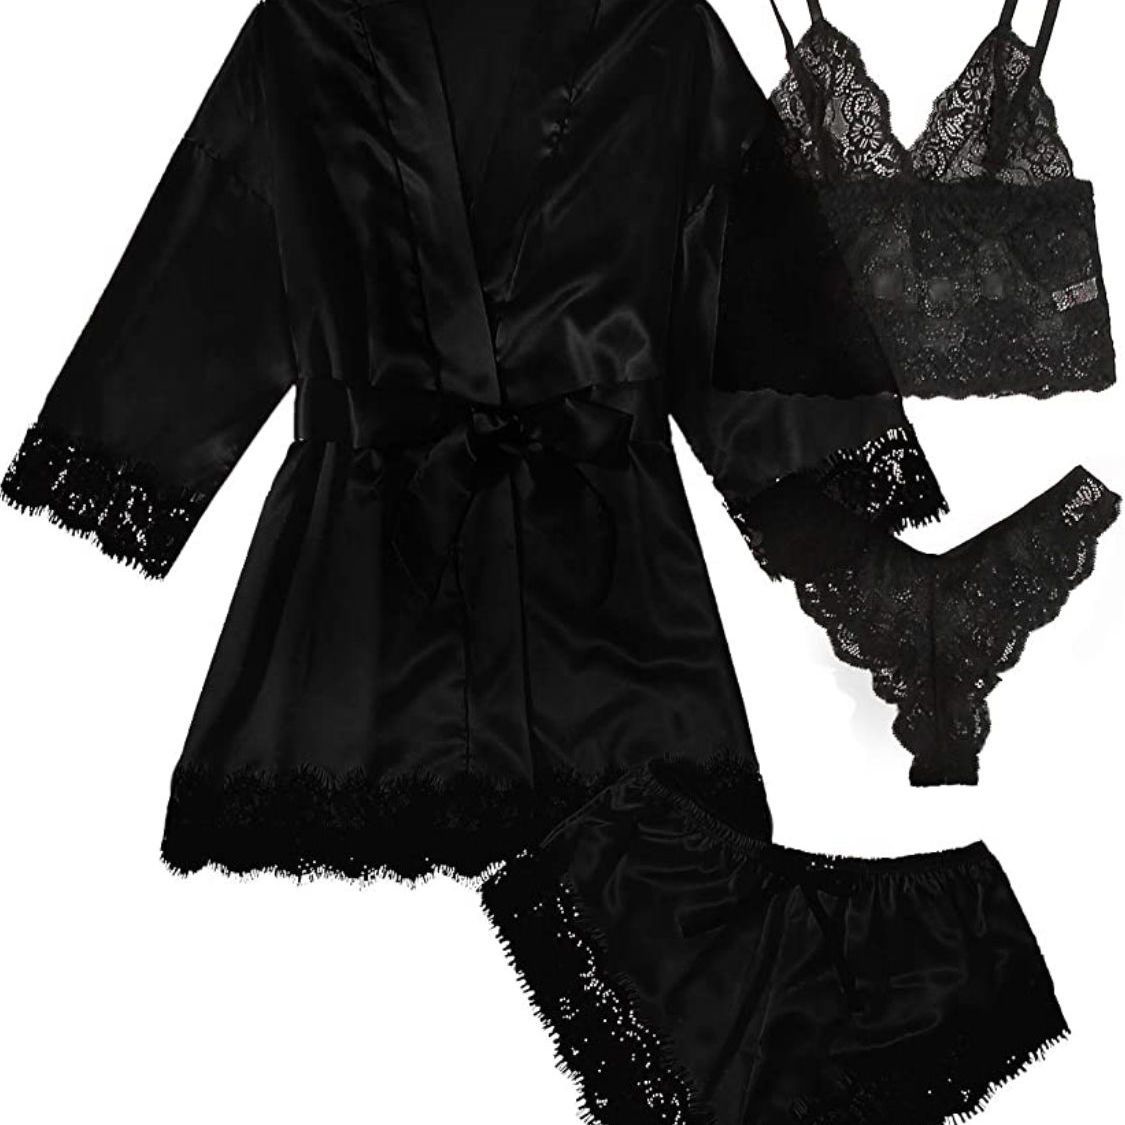 新款欧美女式睡衣 4件套蕾丝花边缎面吊带睡衣套装带睡袍内衣